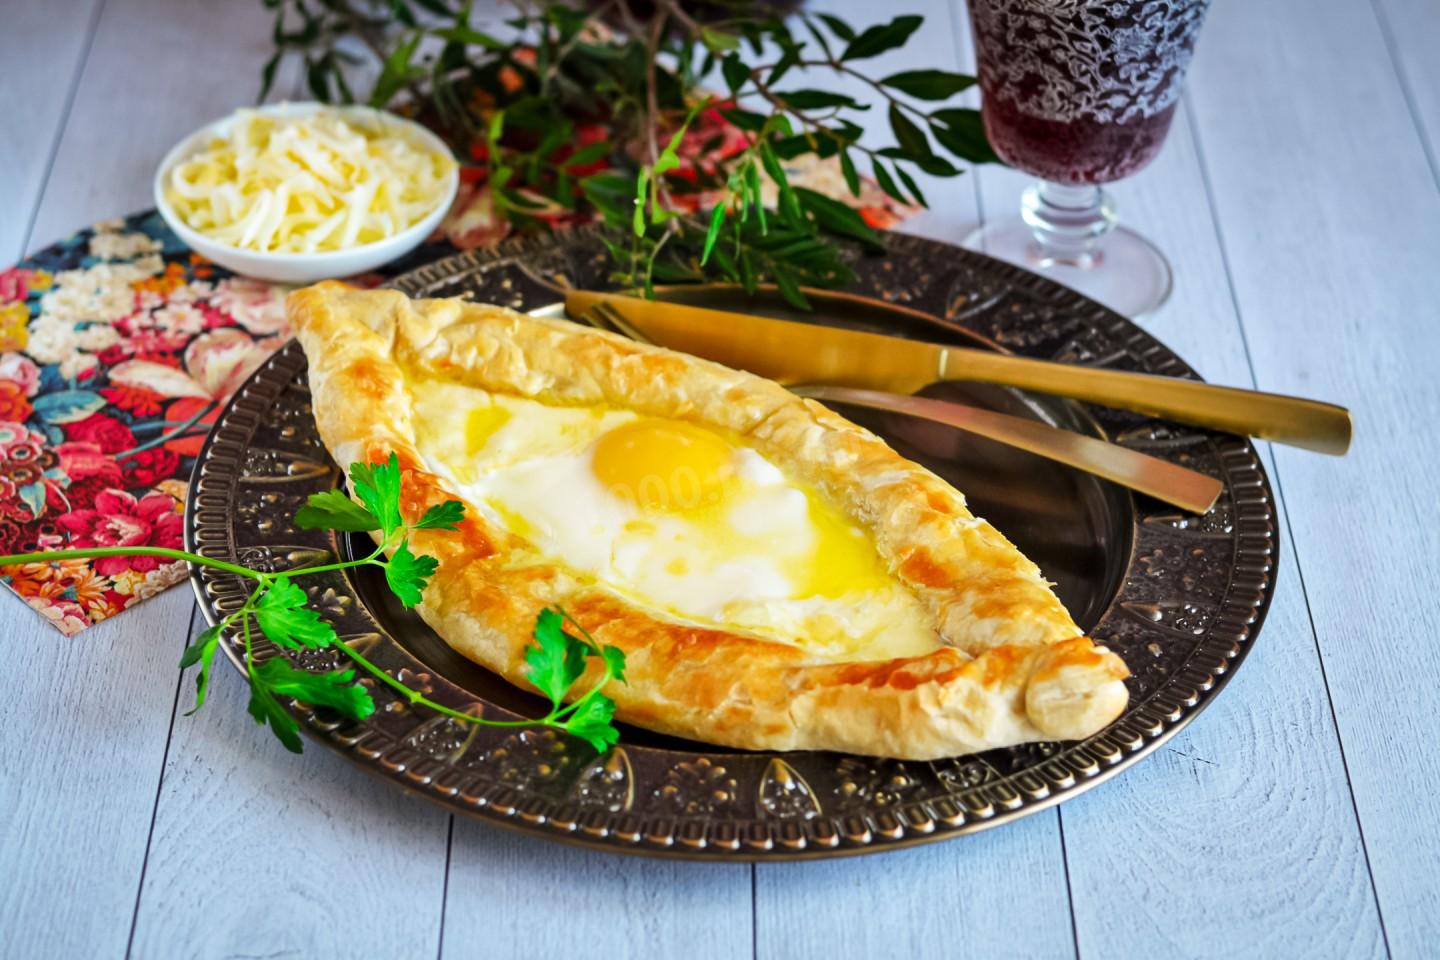 Хачапури по аджарски рецепт из слоеного теста с сыром и яйцом фото